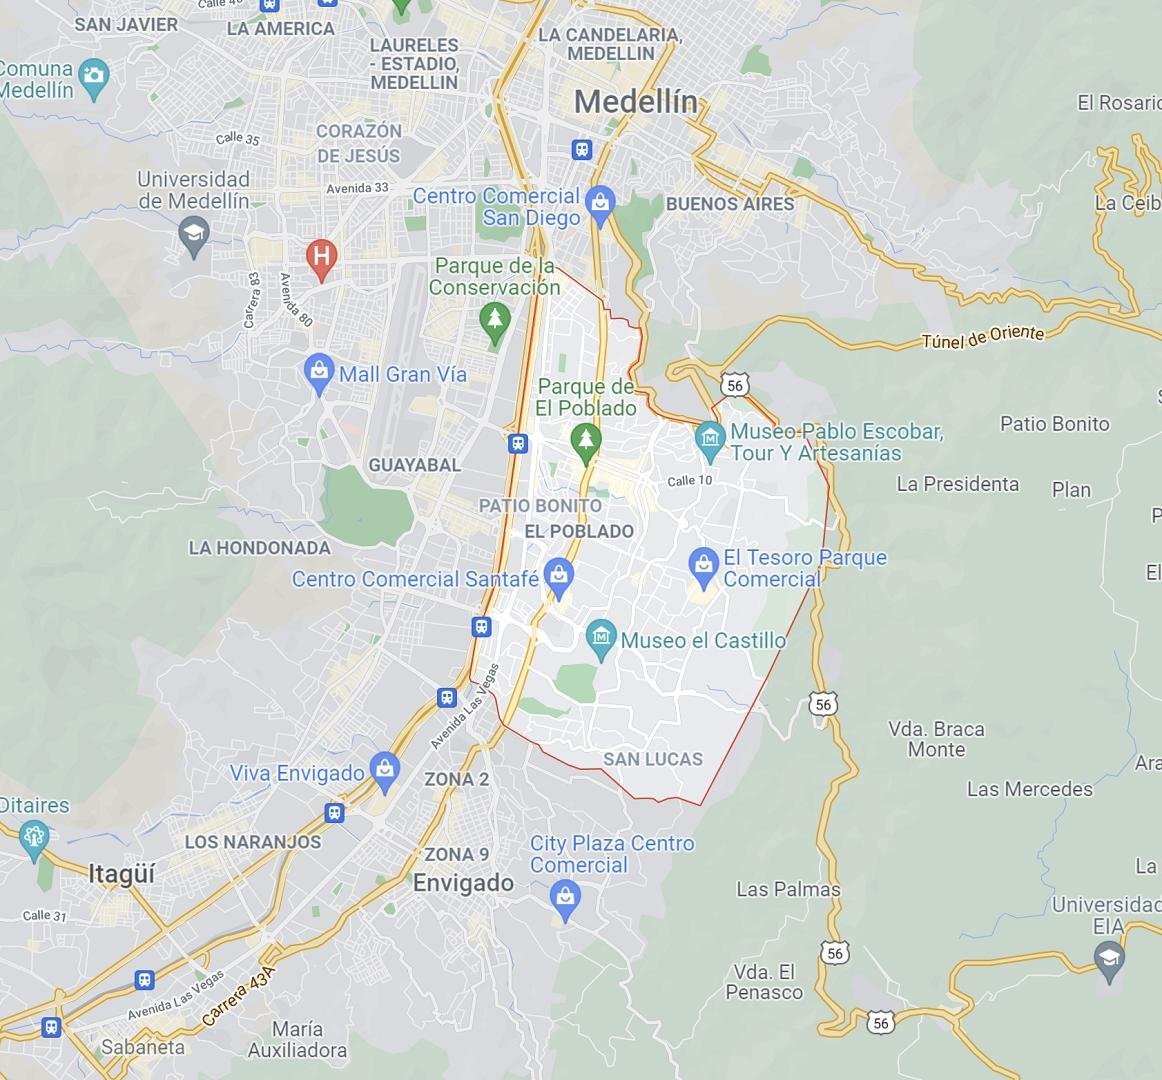 2021-10-12 05_13_50-El Poblado - Google Maps - Opera.jpg